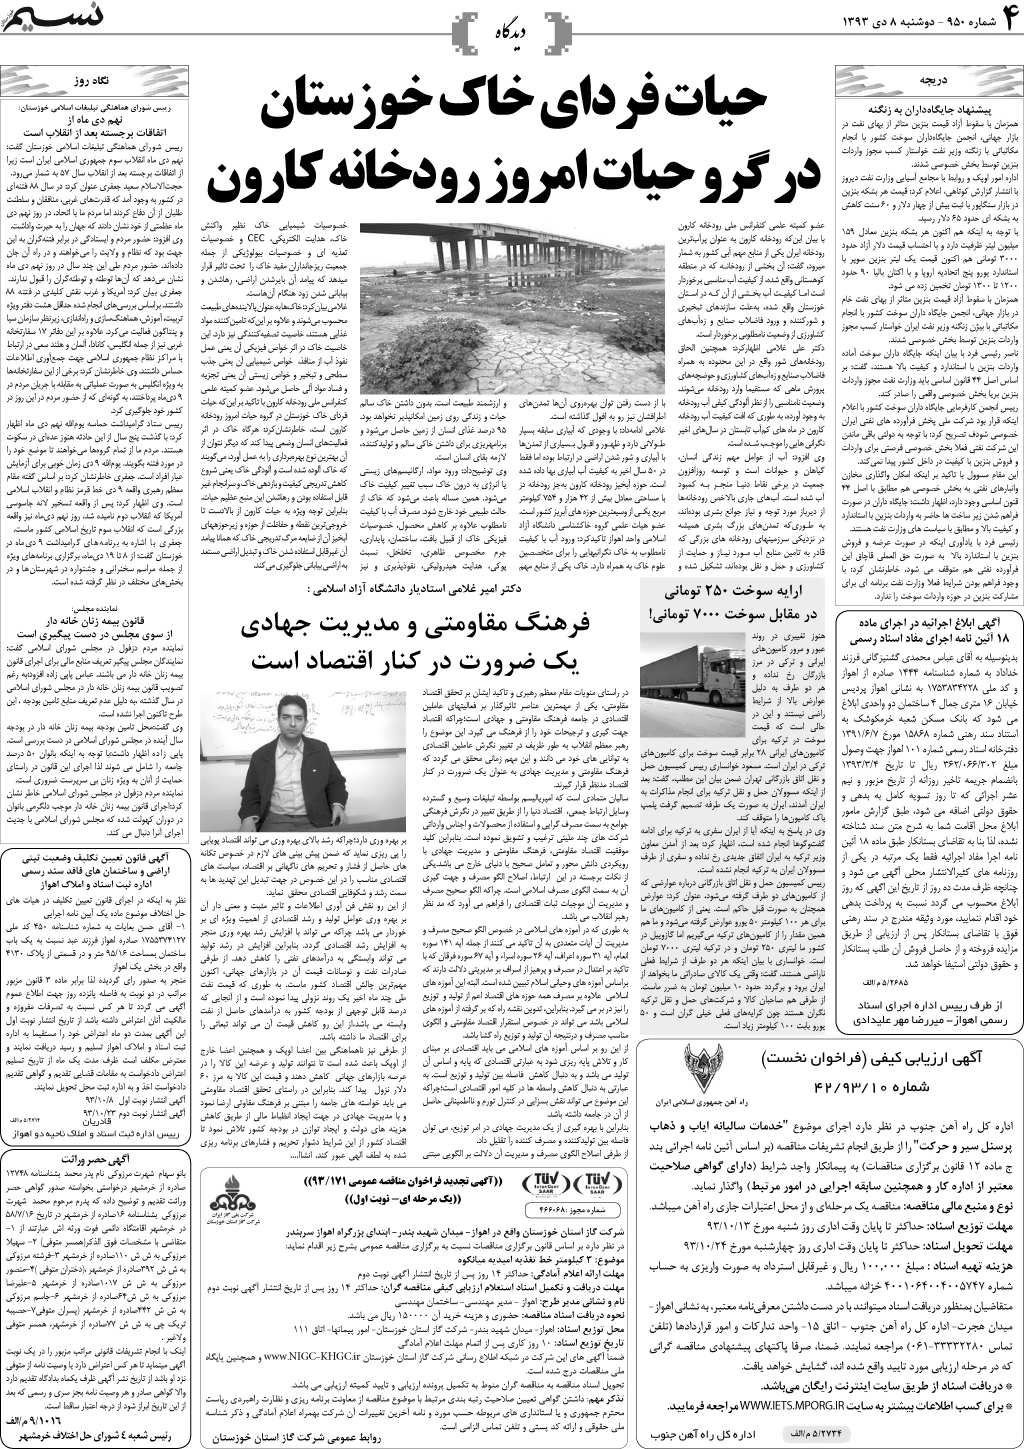 صفحه دیدگاه روزنامه نسیم شماره 950